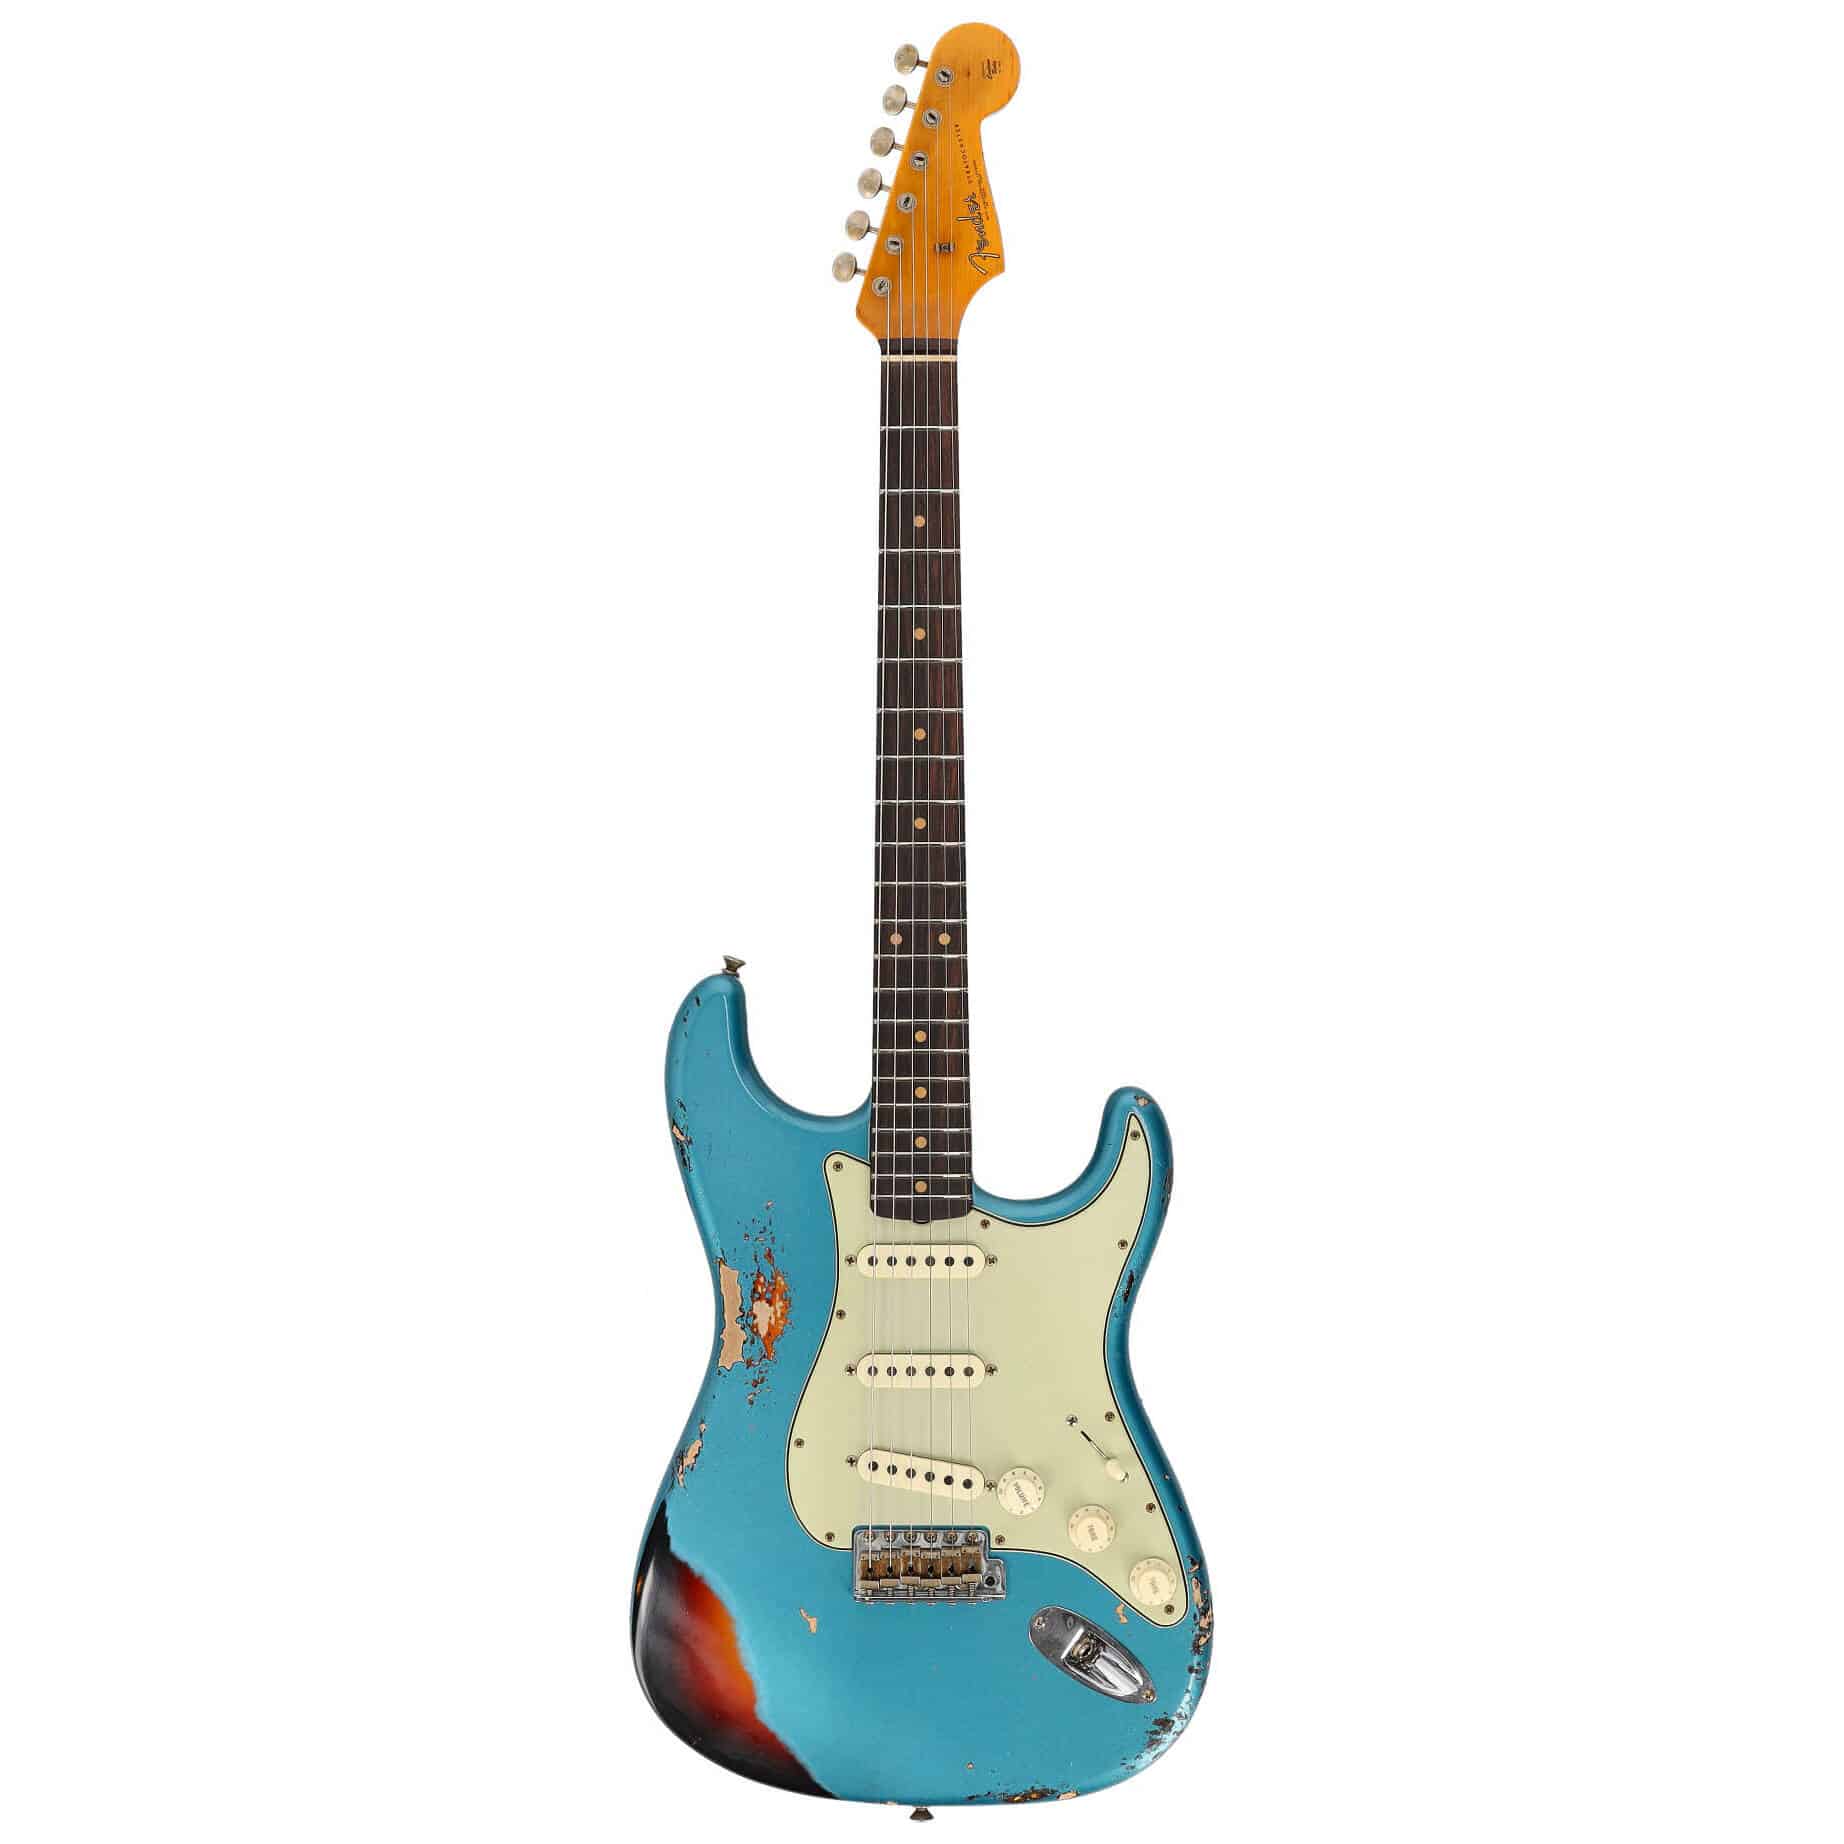 Fender LTD Custom Shop Roasted 62 Stratocaster Heavy Relic Aged Ocean Turquoise over 3-CS